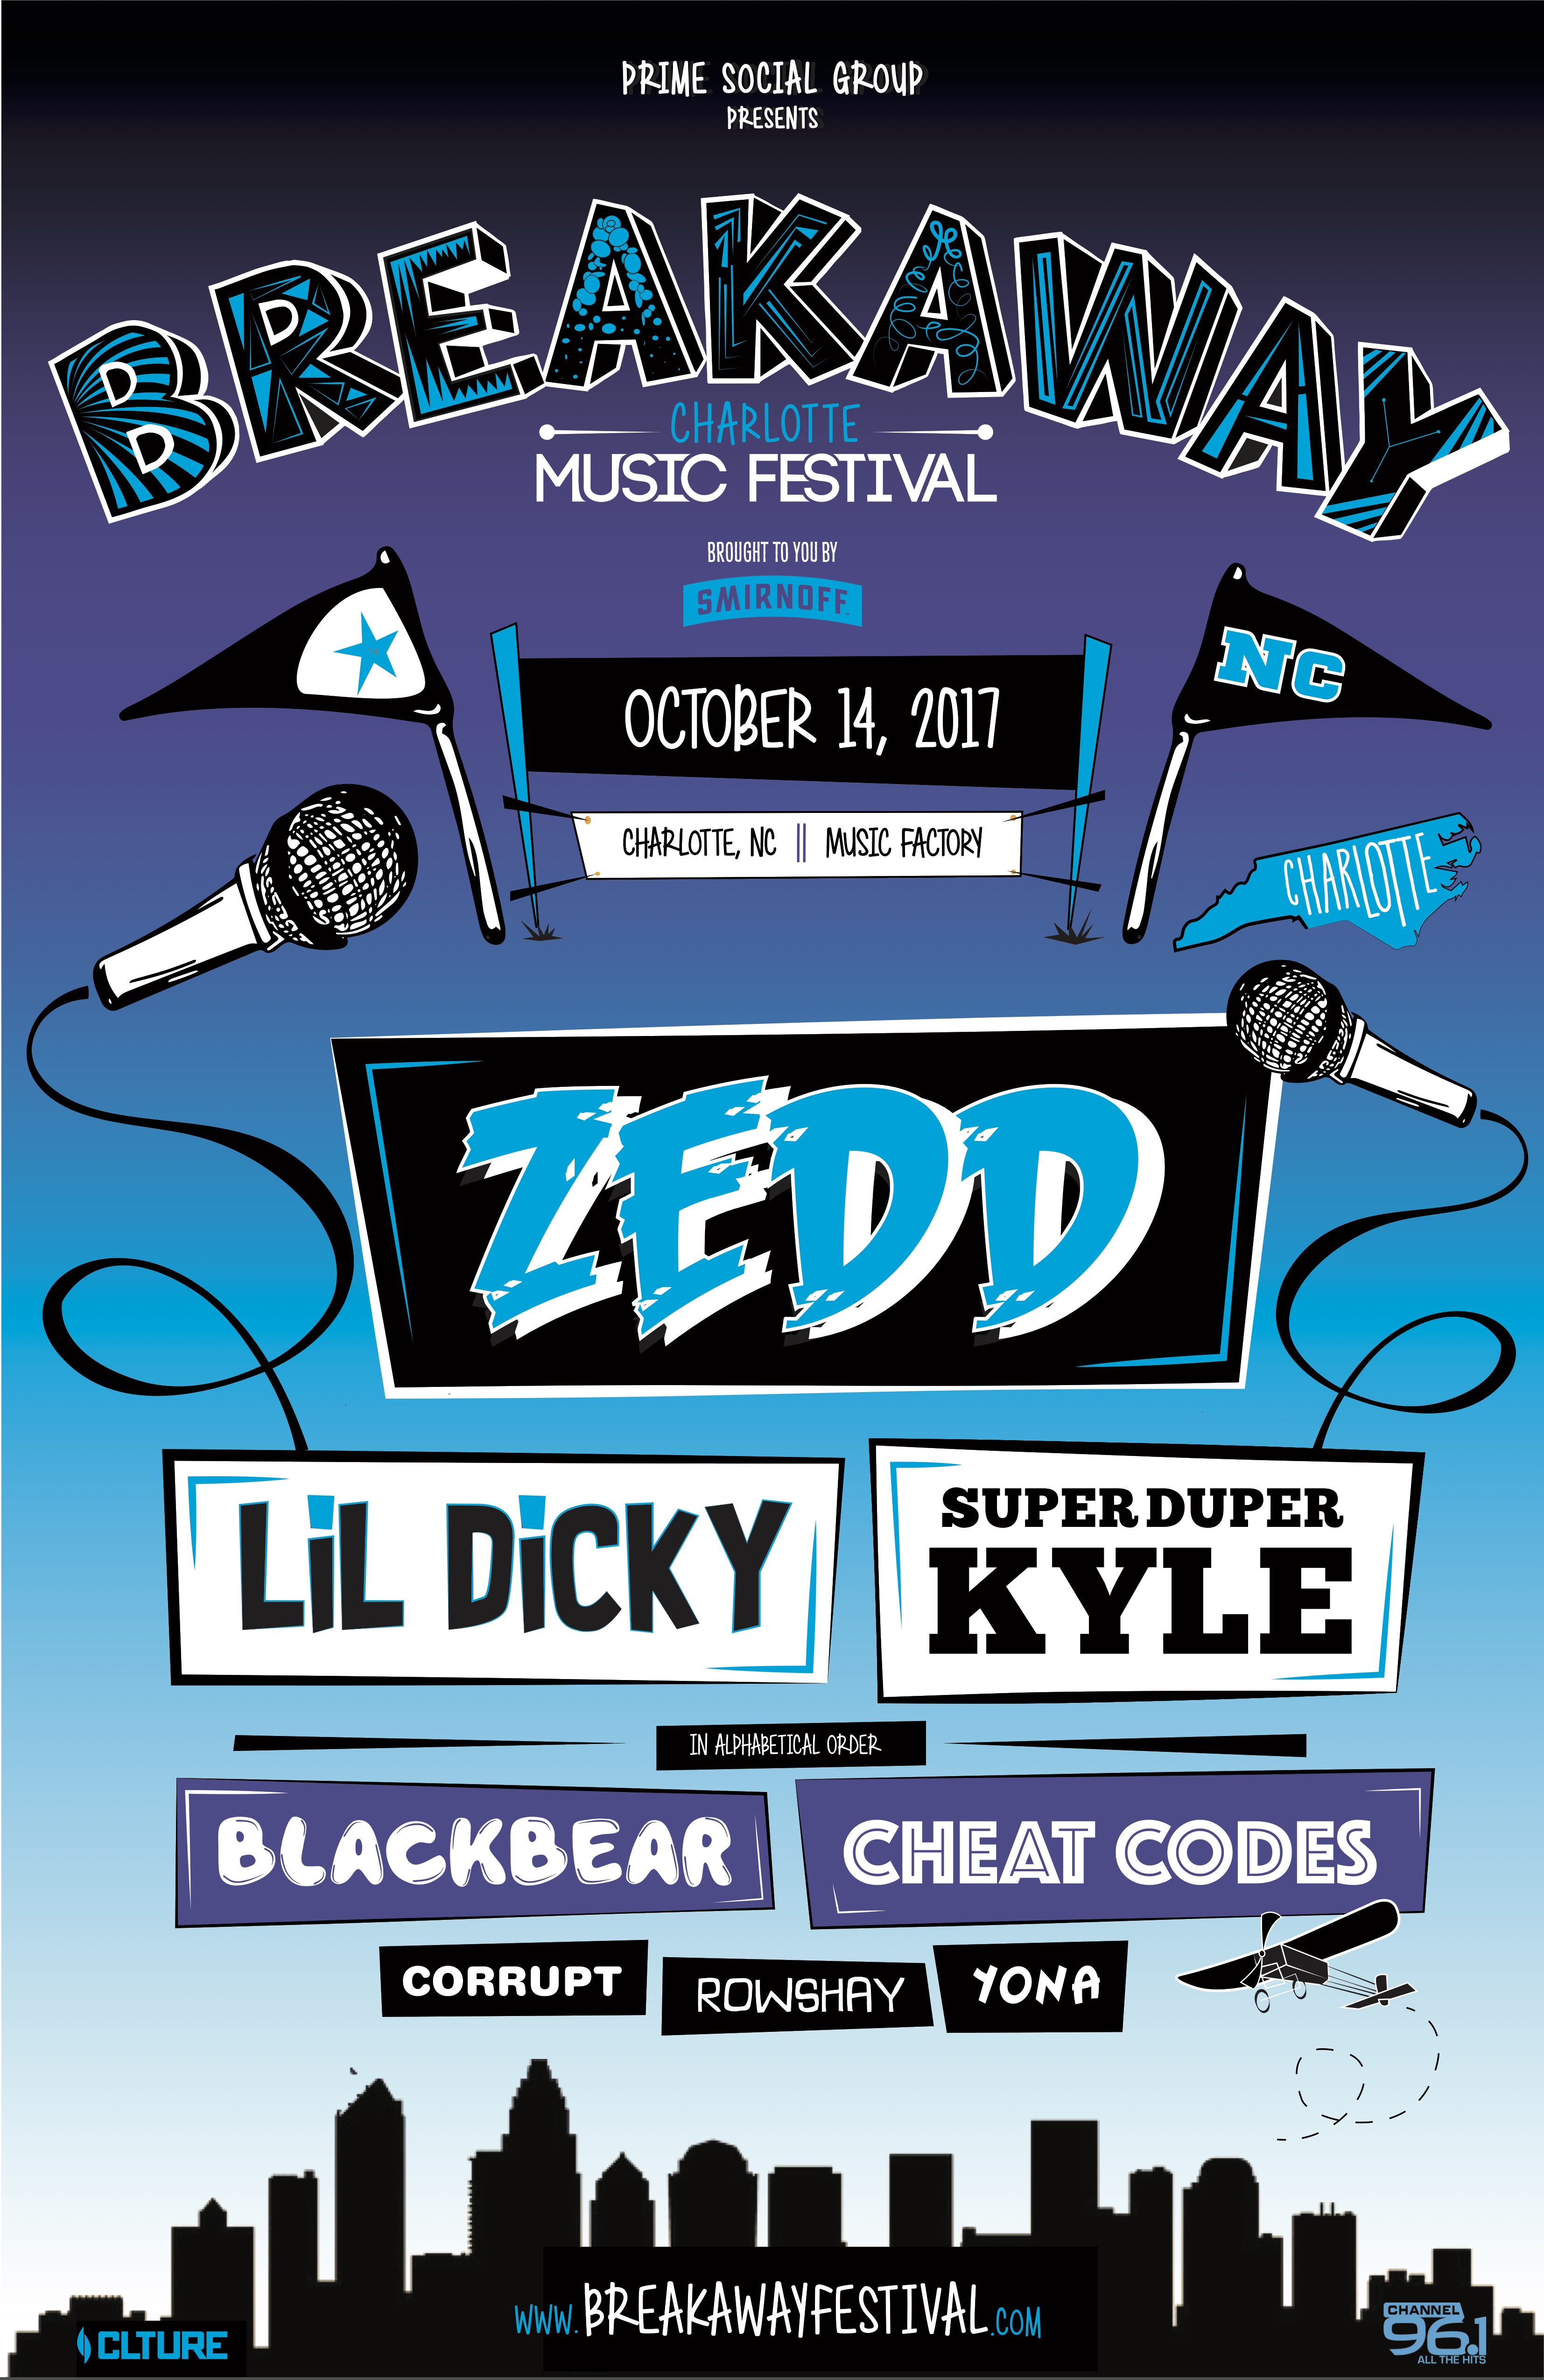 Zedd Announced as Headliner of Breakaway Music Festival Brand Expansion